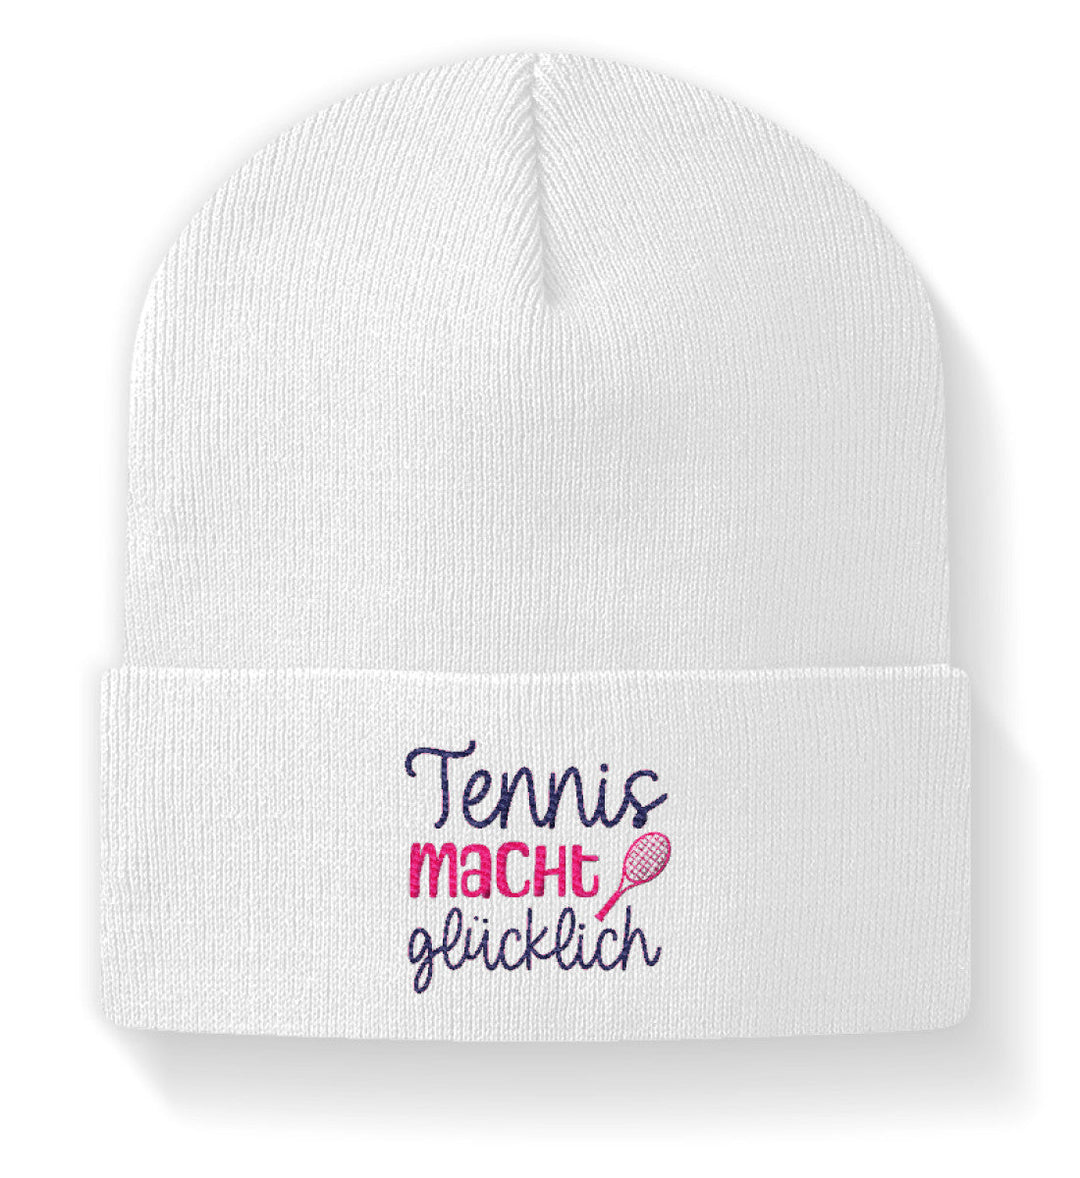 Tennis macht glücklich | Beanie (bestickt) - Matchpoint24 - Kleidung für Tennisfans